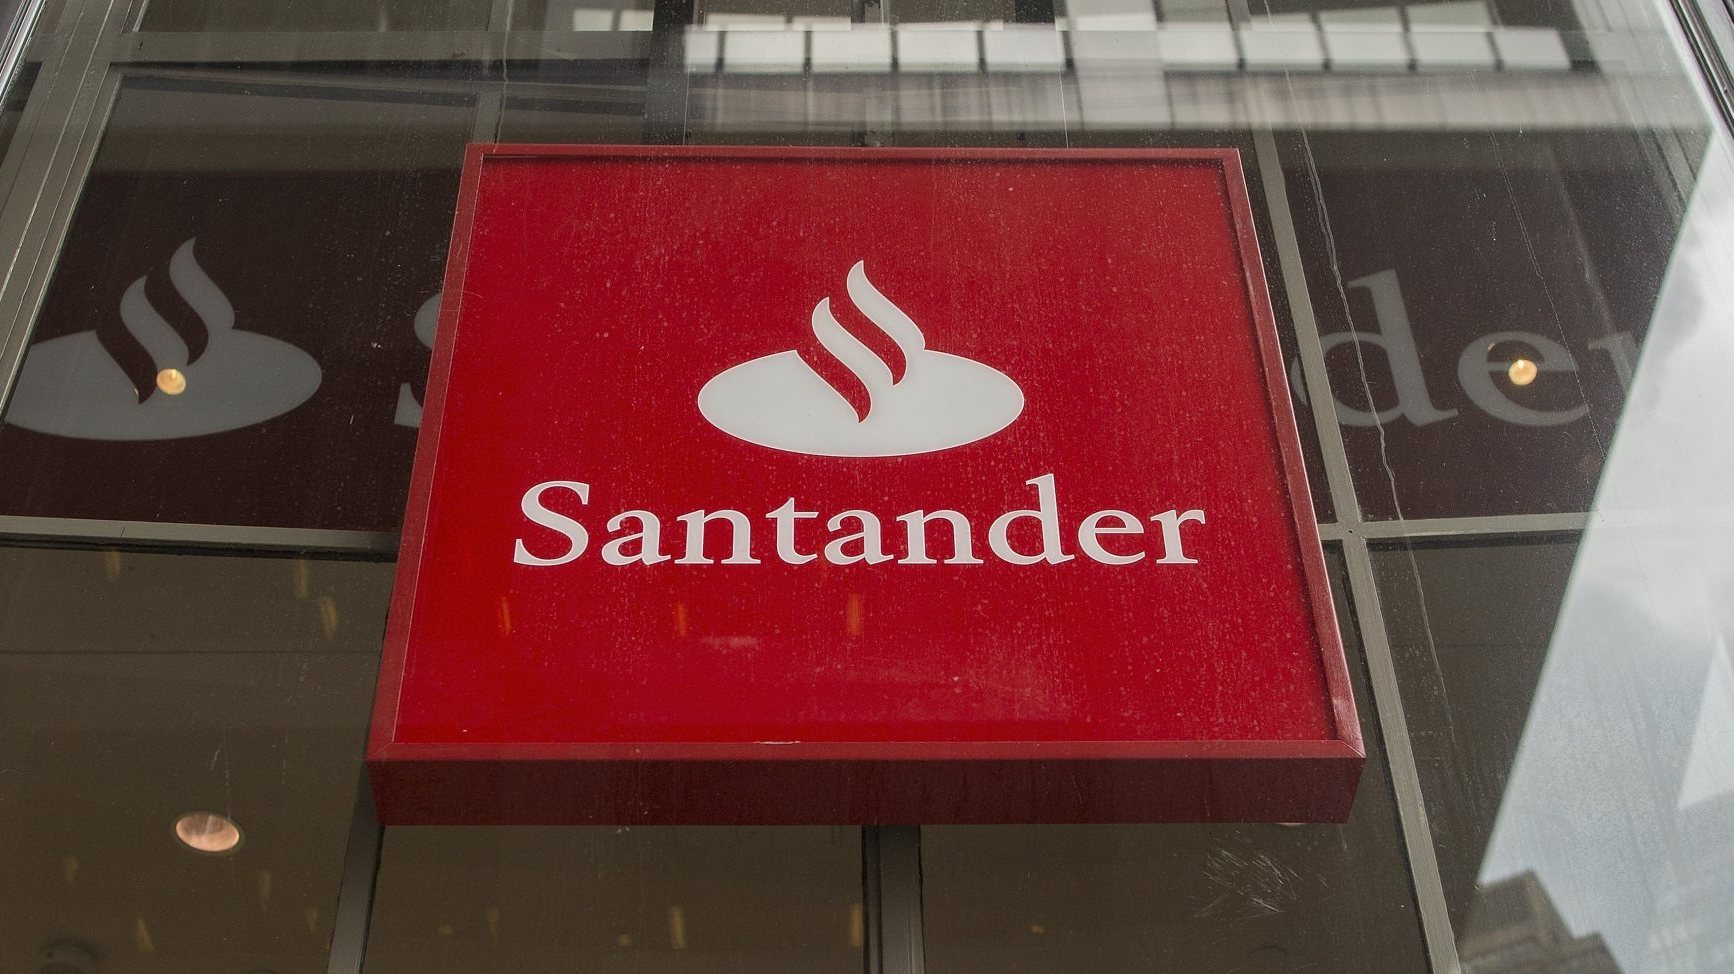 O assalto ao Santander ocorreu em 2018, na noite de S. João (23 para 24 de junho), tendo rendido dinheiro e valores avaliados em quatro milhões de euros